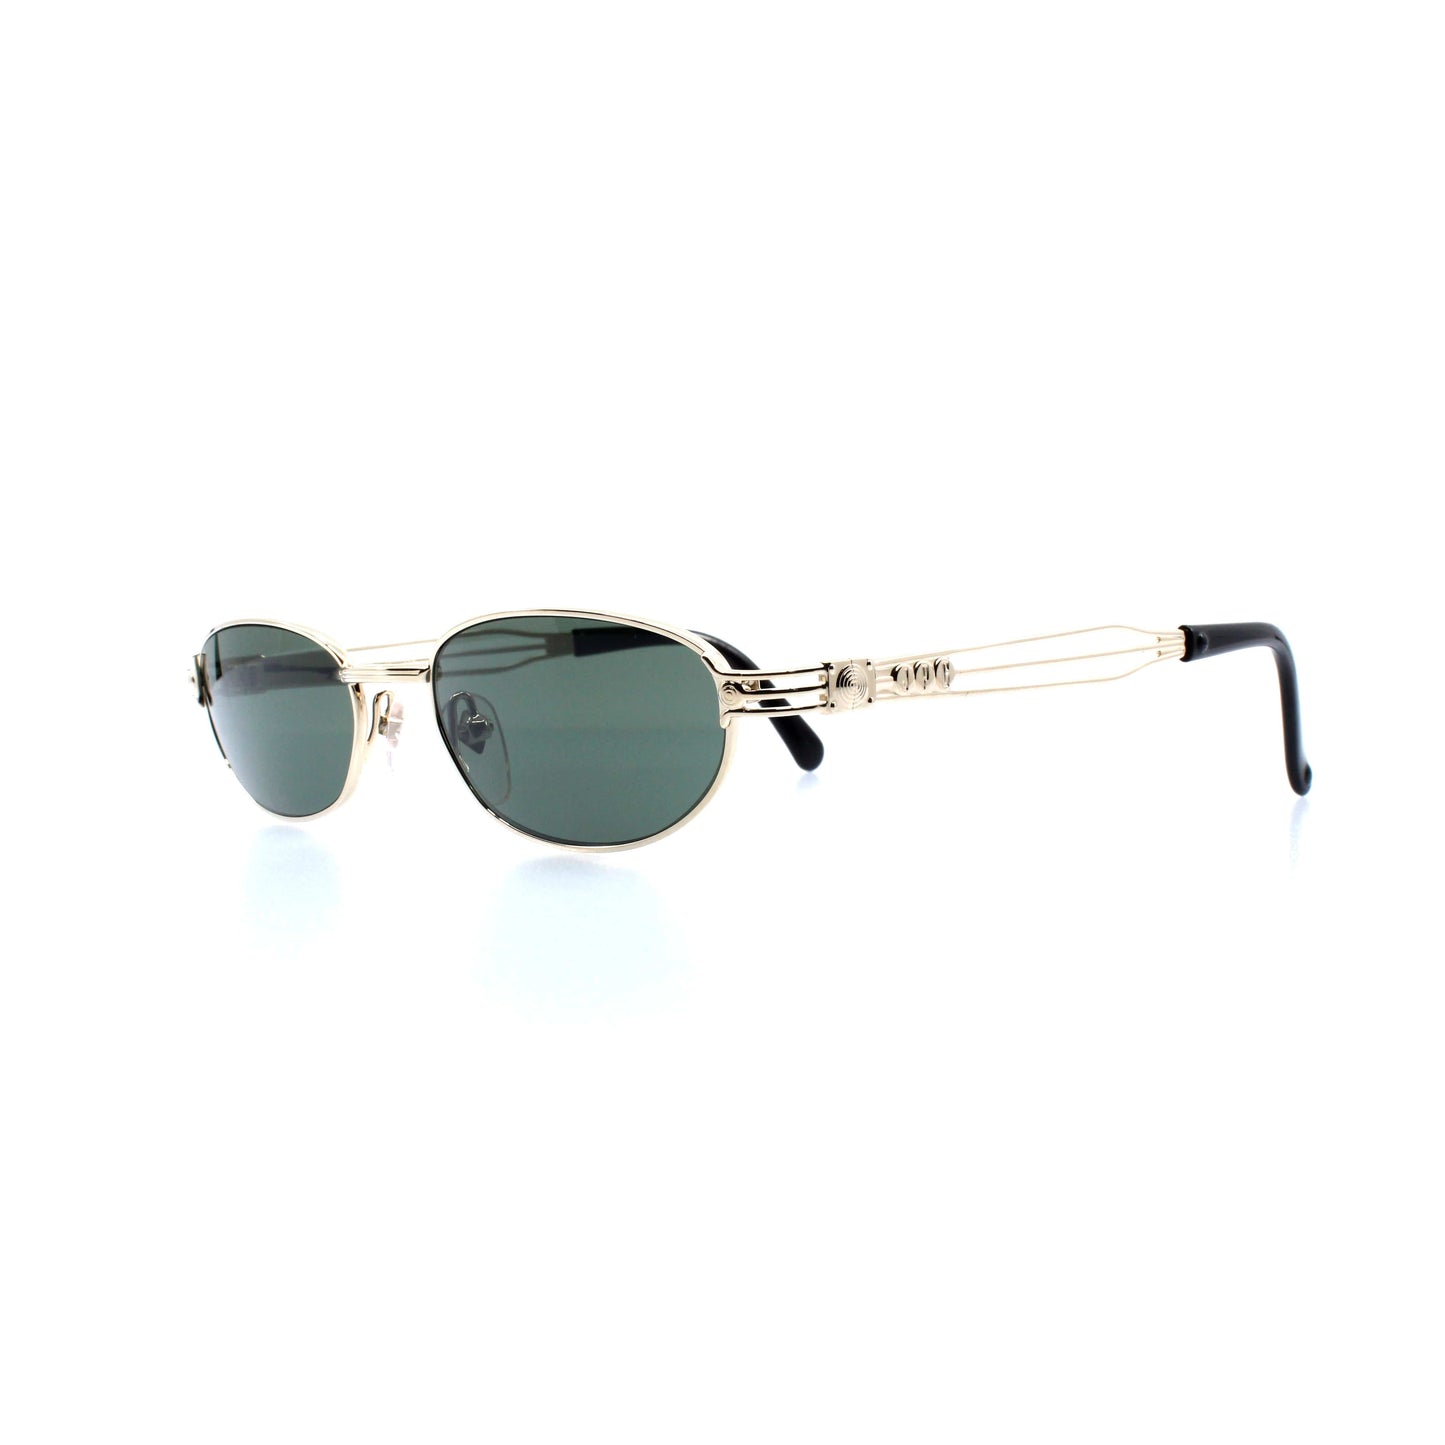 Gold Vintage Jean Paul Gaultier 58-0001 Sunglasses RSTKD Vintage